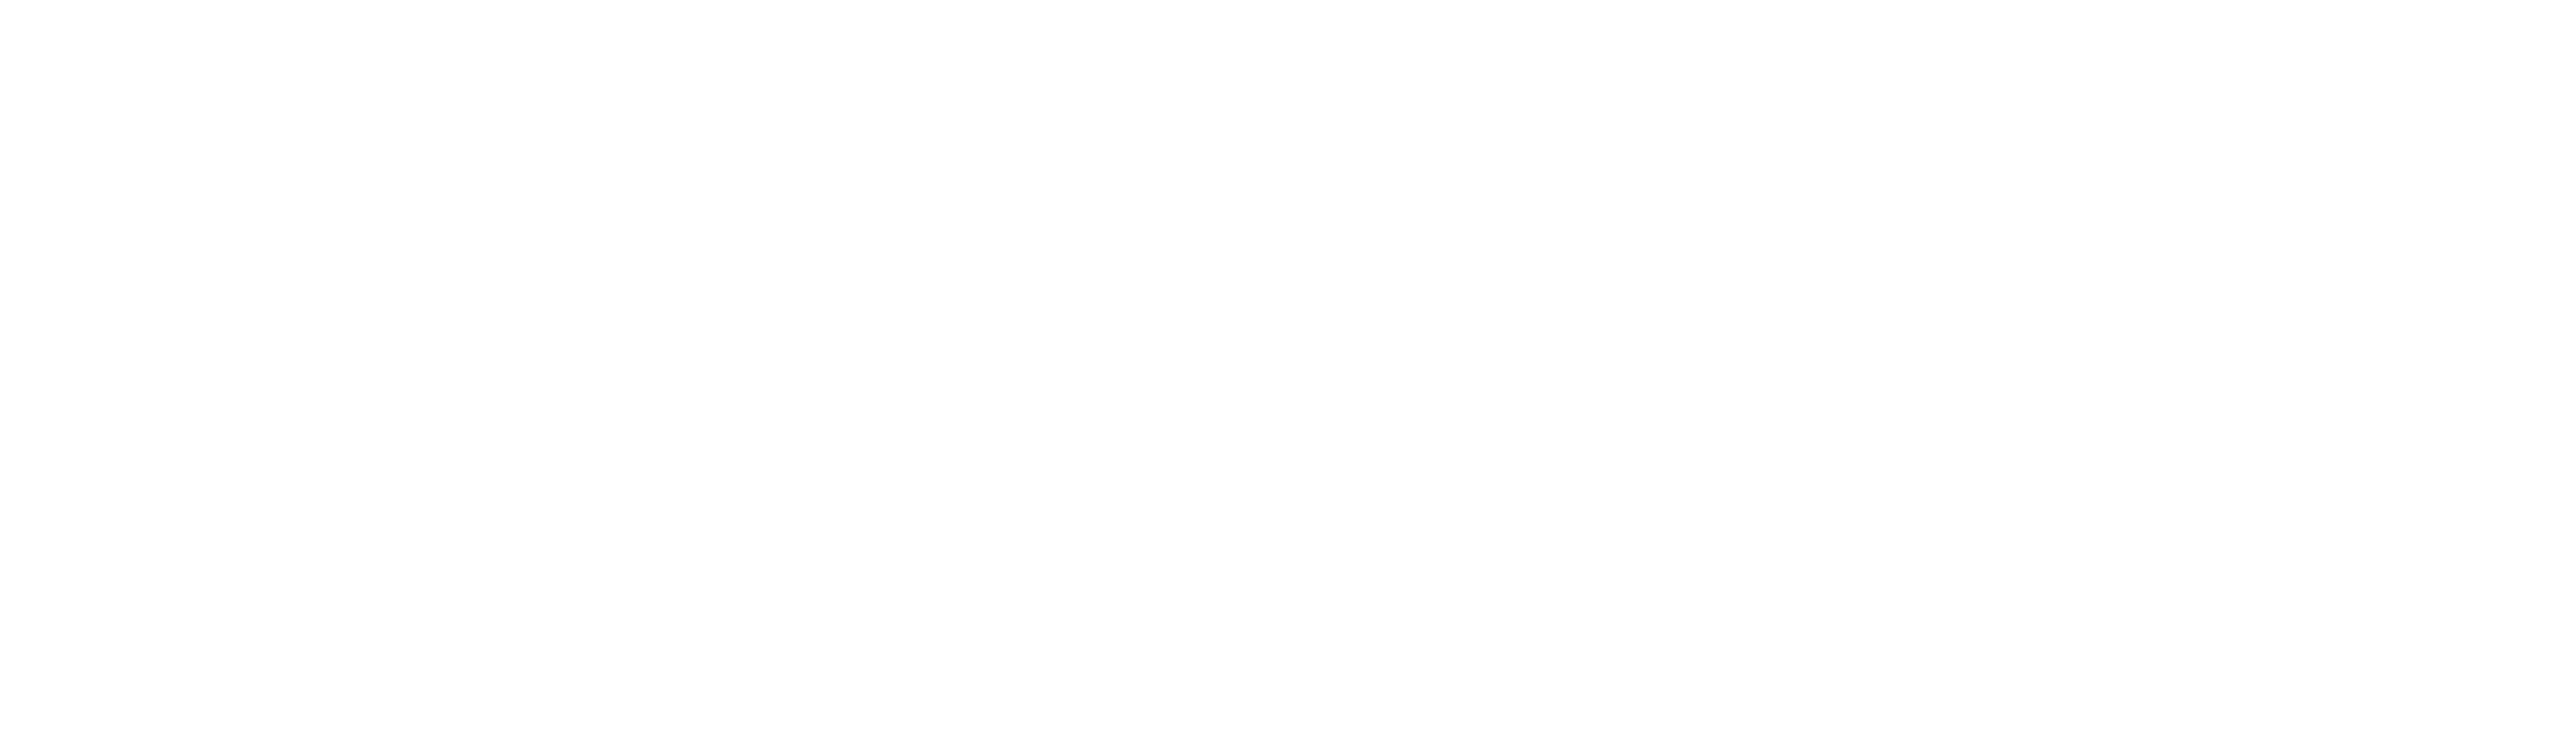 Screen CanterburyNZ Logo